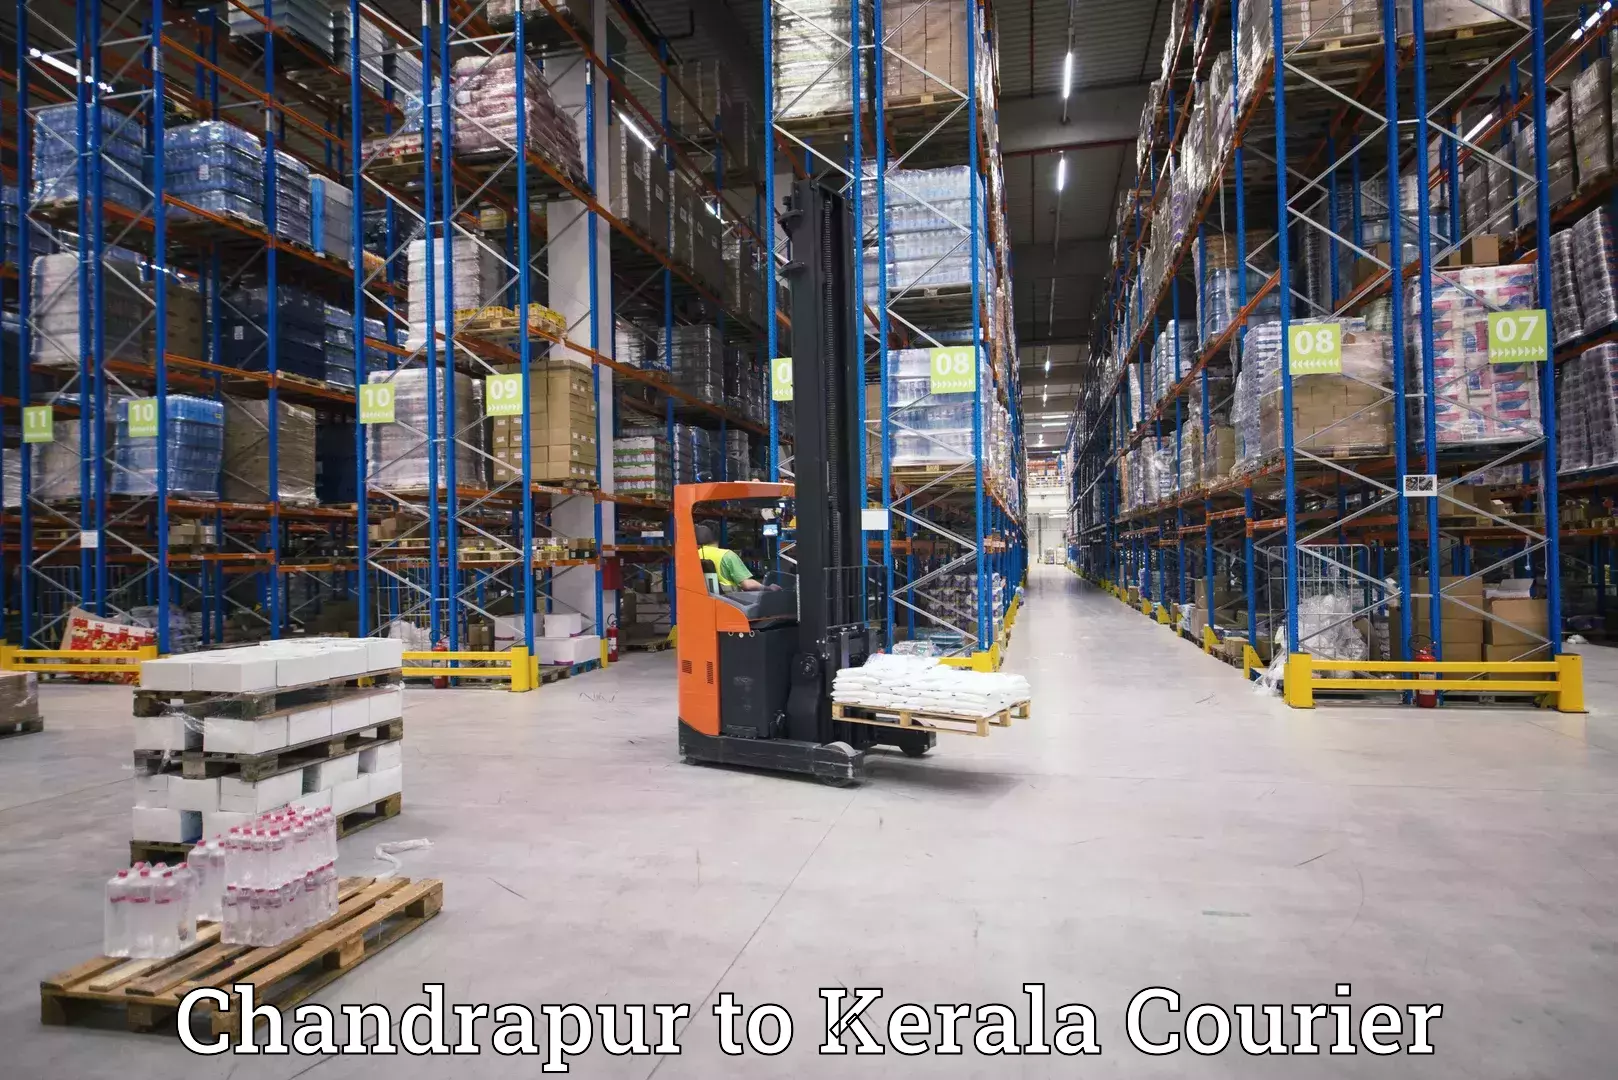 Business shipping needs Chandrapur to Chiramanangad